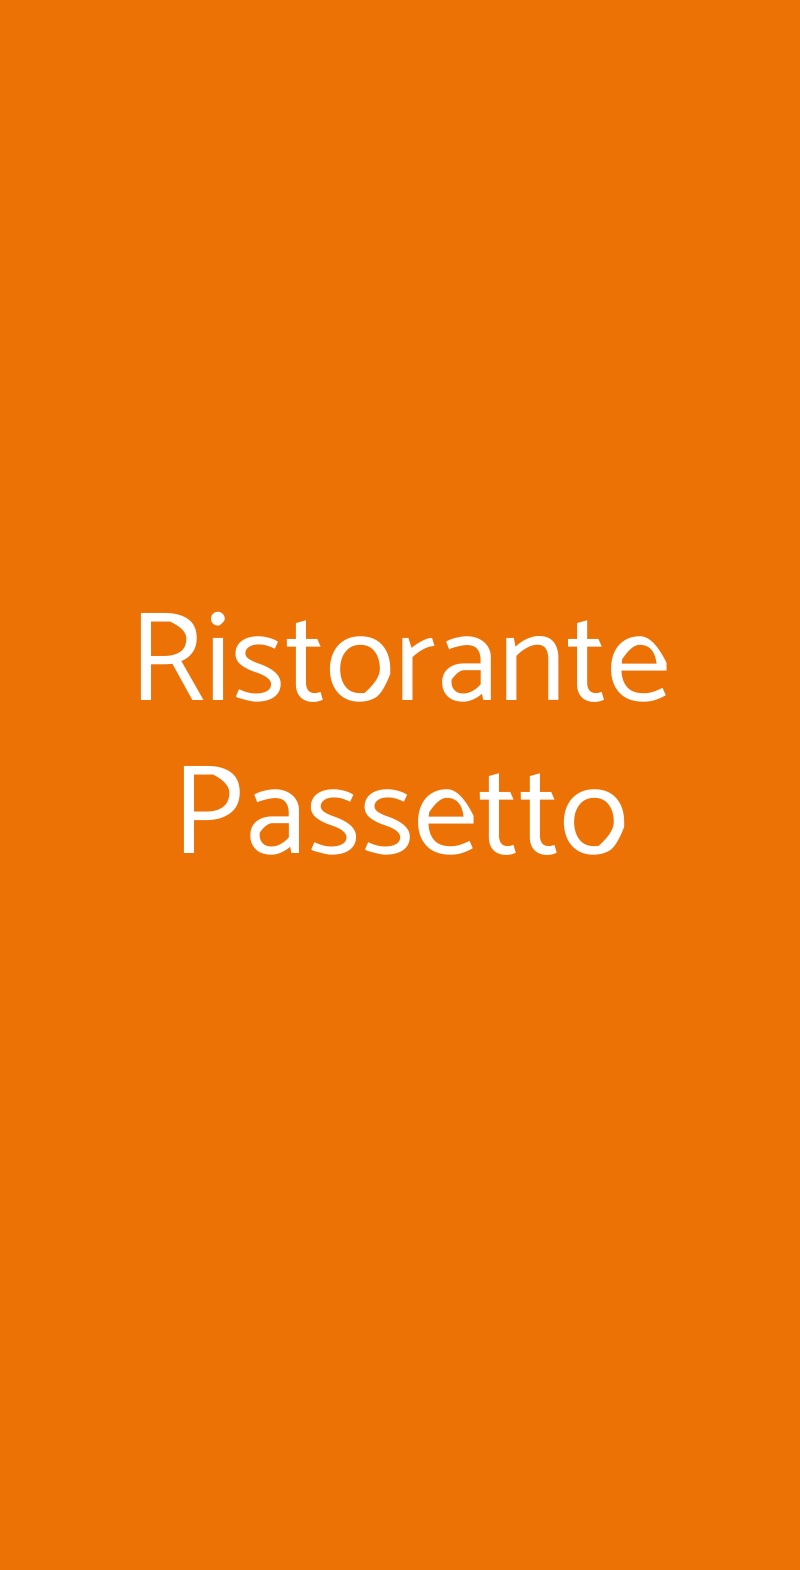 Ristorante Passetto Roma menù 1 pagina